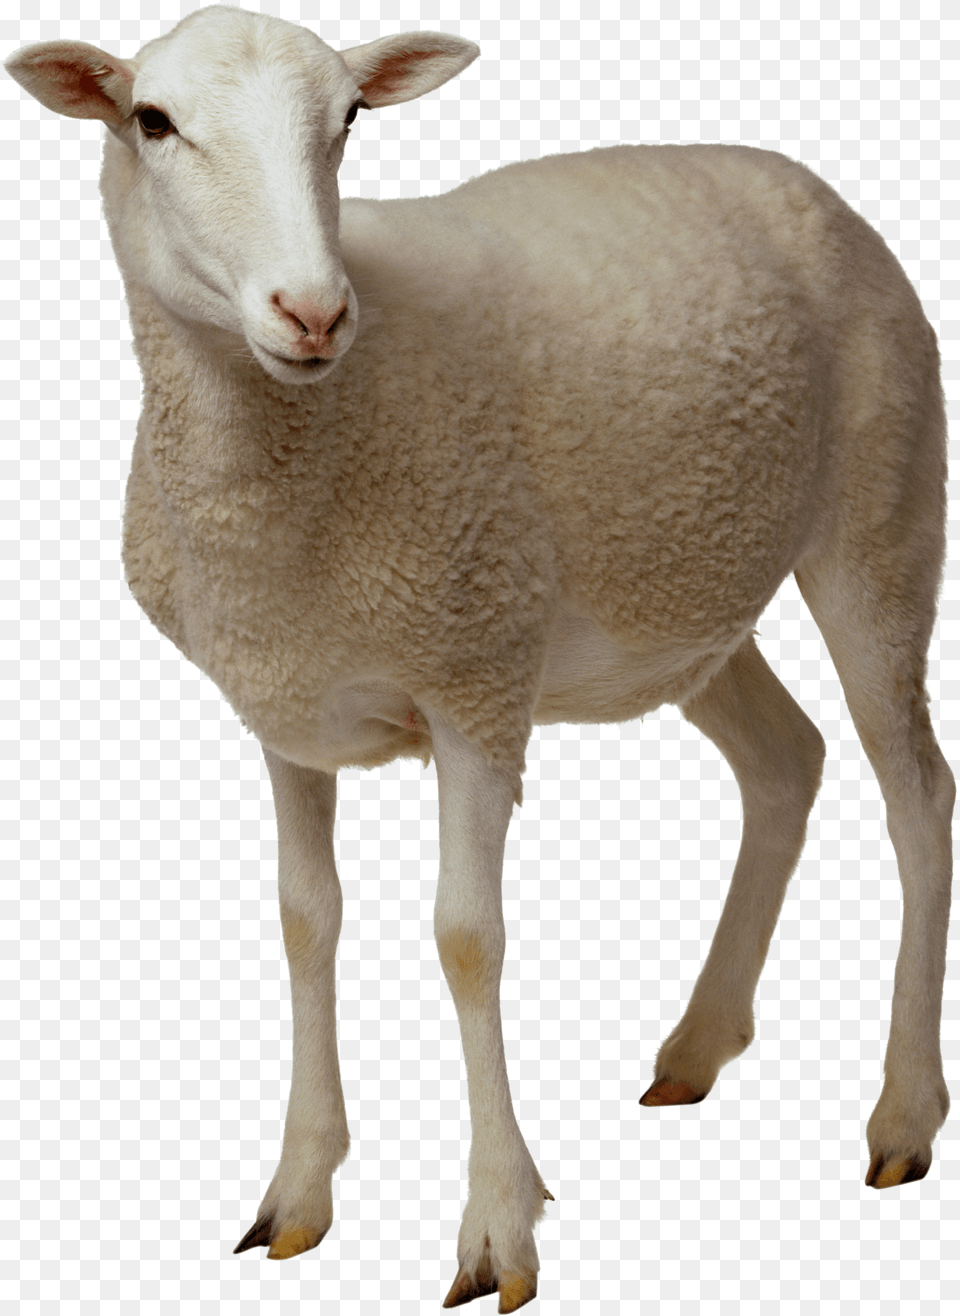 Sheep Looking, Animal, Livestock, Mammal Png